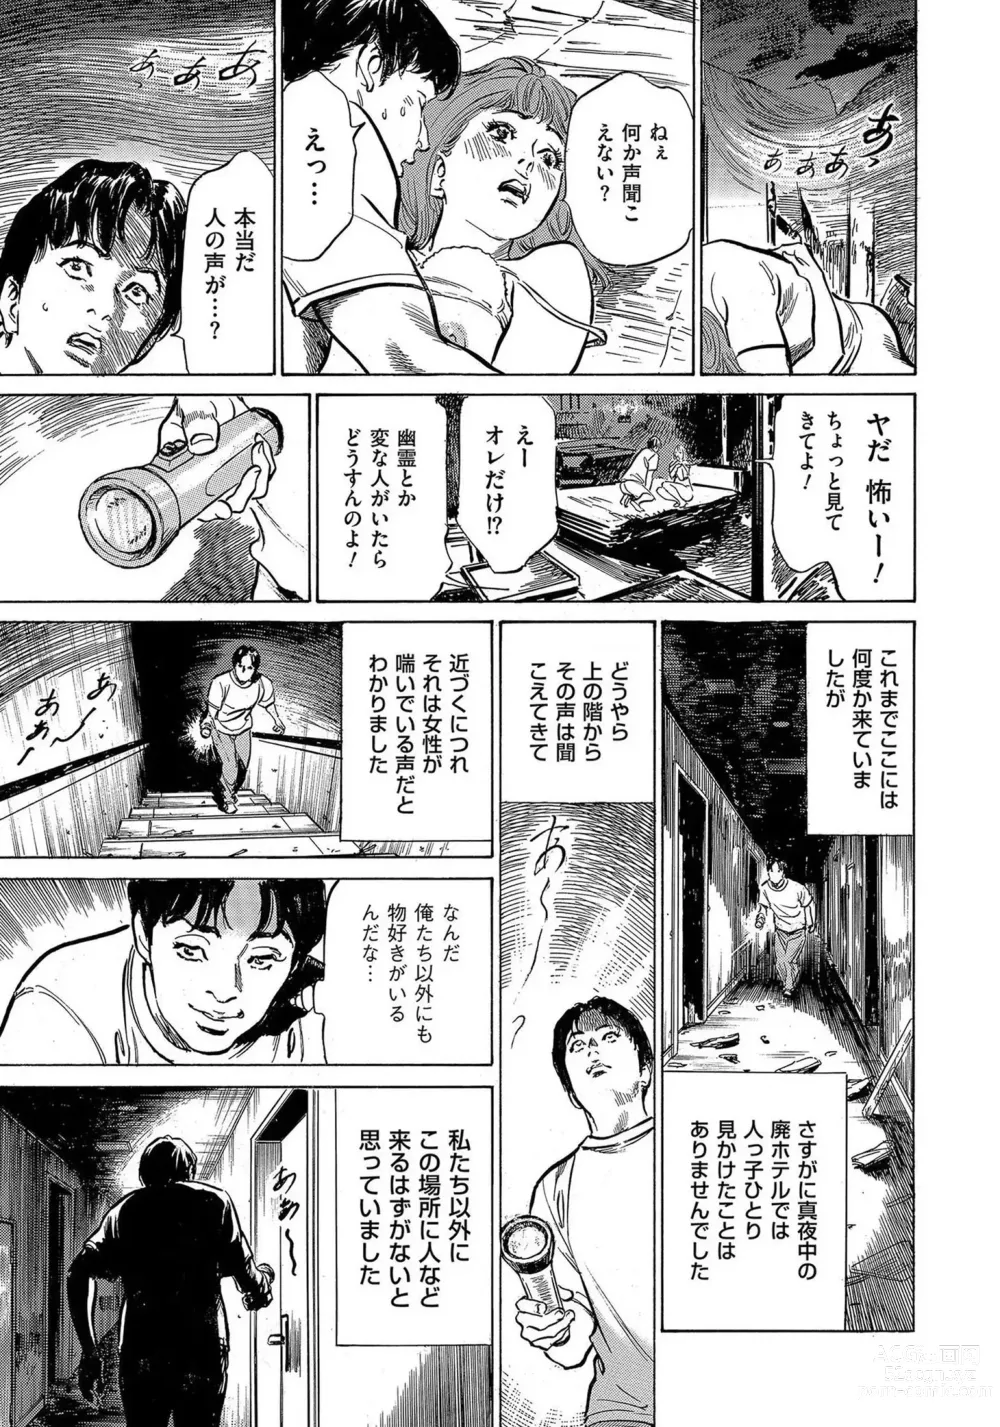 Page 22 of manga Saikou ni Toroketa Honki de Honto no Hanashi 16 episodes